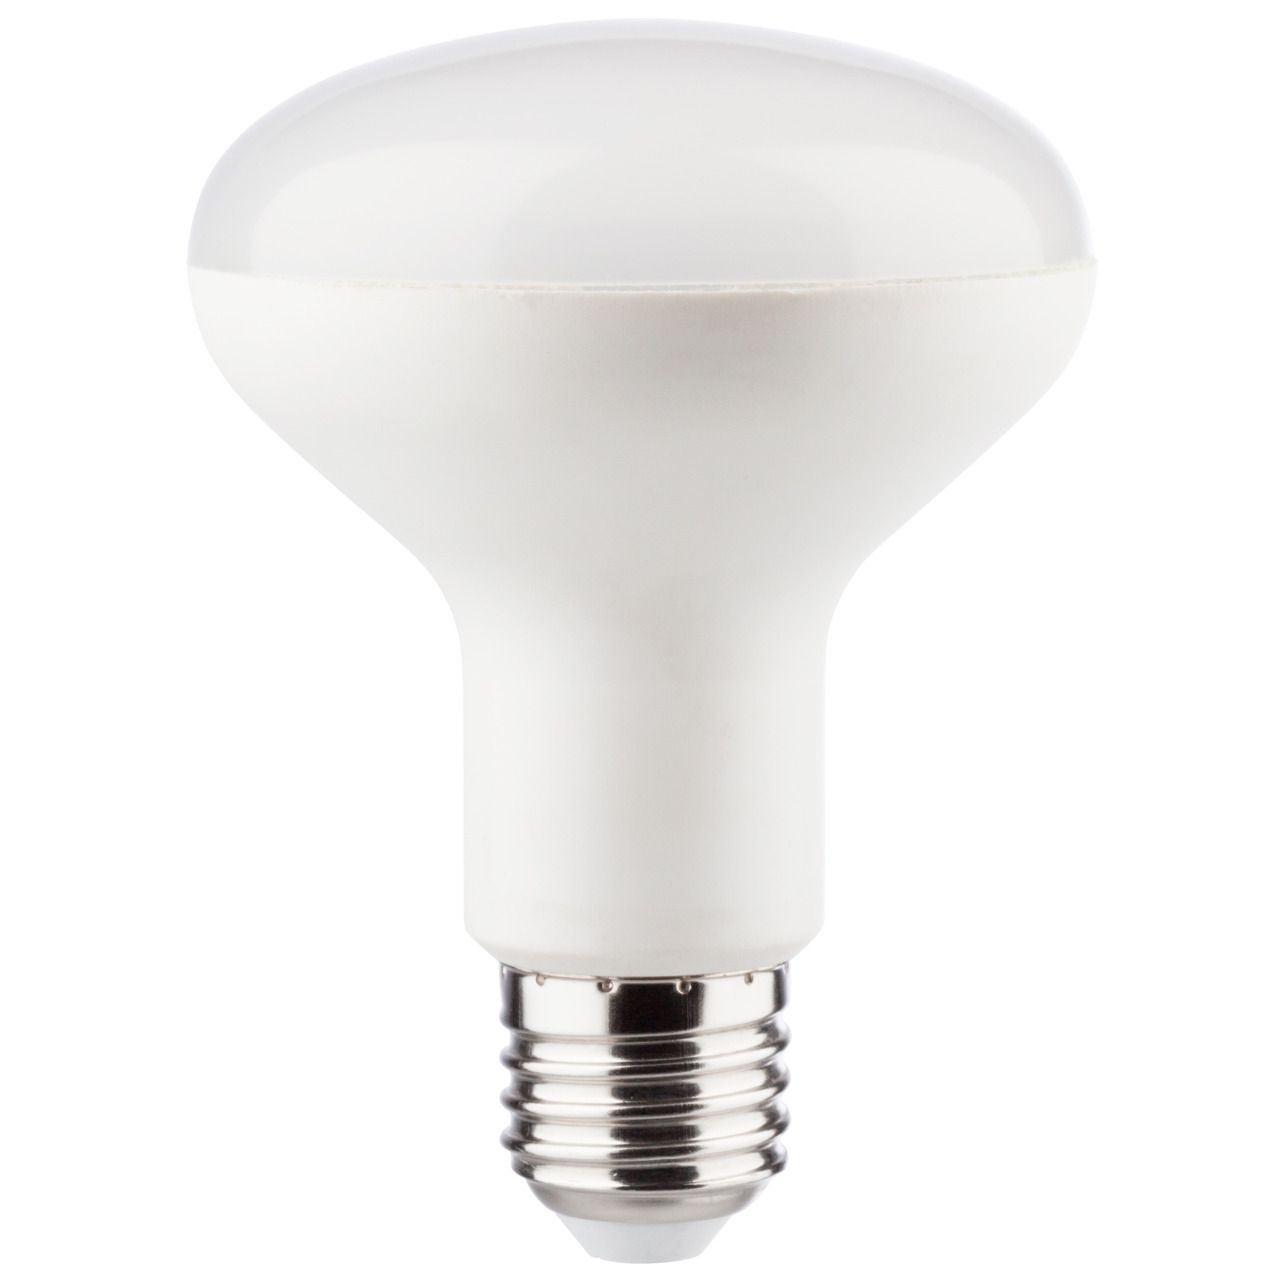 Mller Licht 11-W-R80-LED-Reflektorlampe E27- 1055 lm- 2700 K- warmweiss